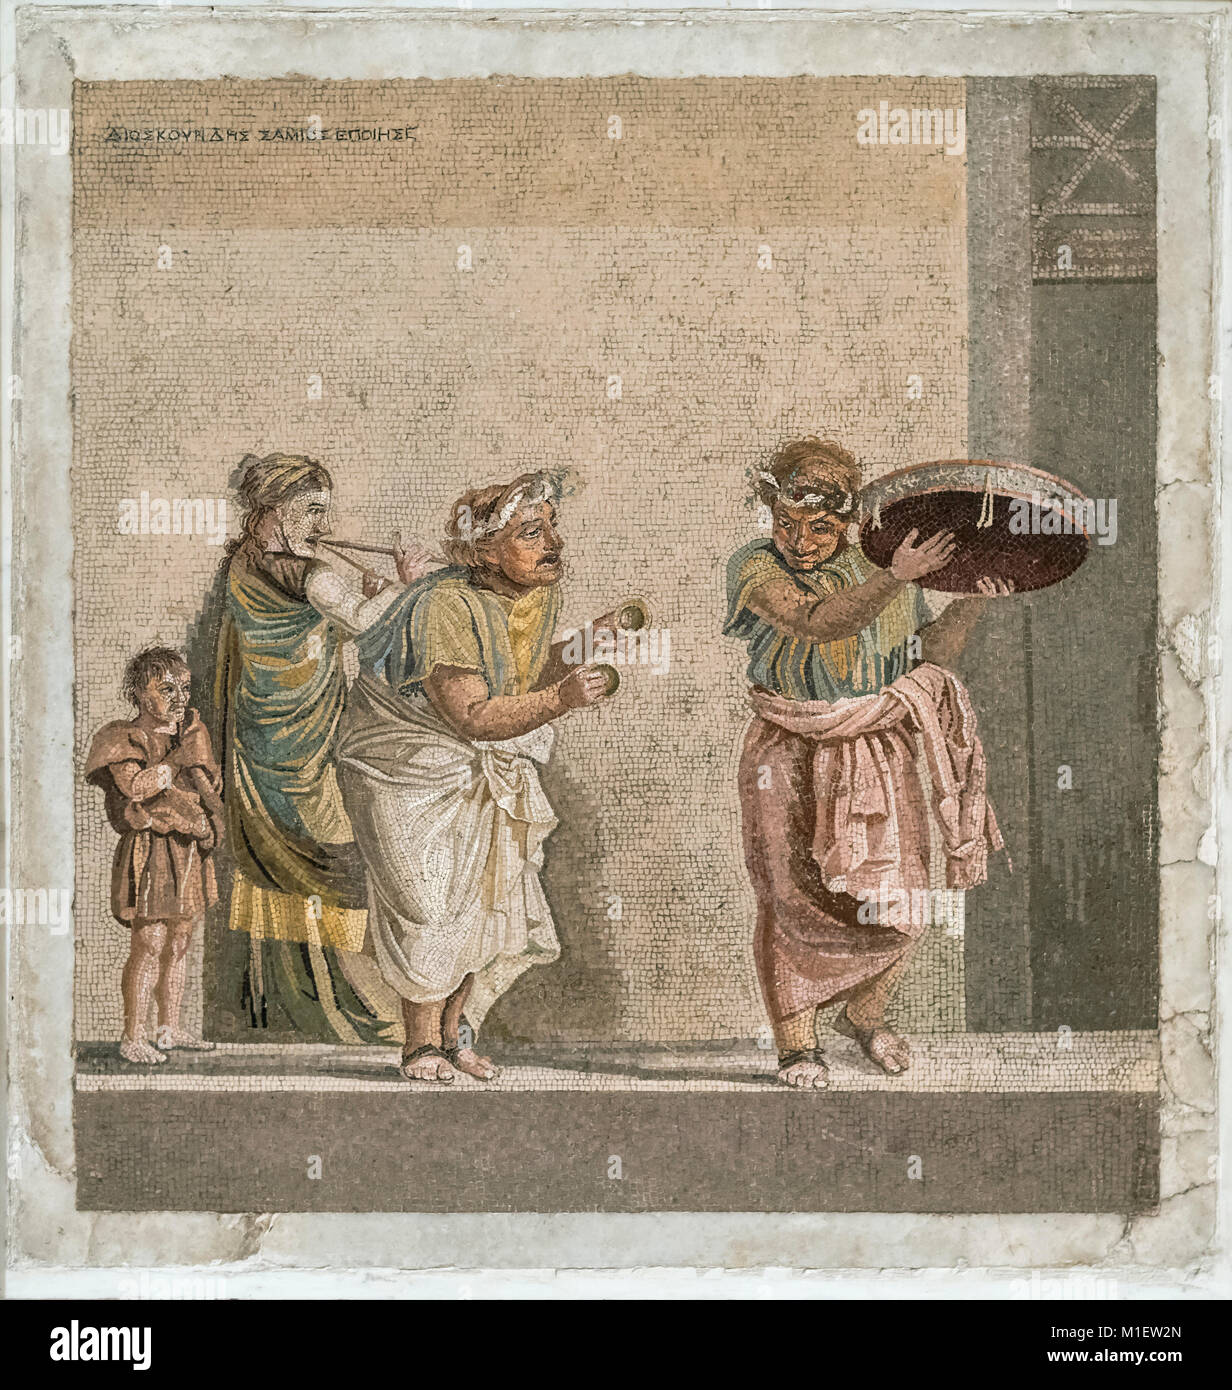 Neapel. Italien. Römische Mosaik, Straßenmusikanten. Museo Archeologico Nazionale di Napoli. Neapel Nationalen Archäologischen Museum. Stockfoto